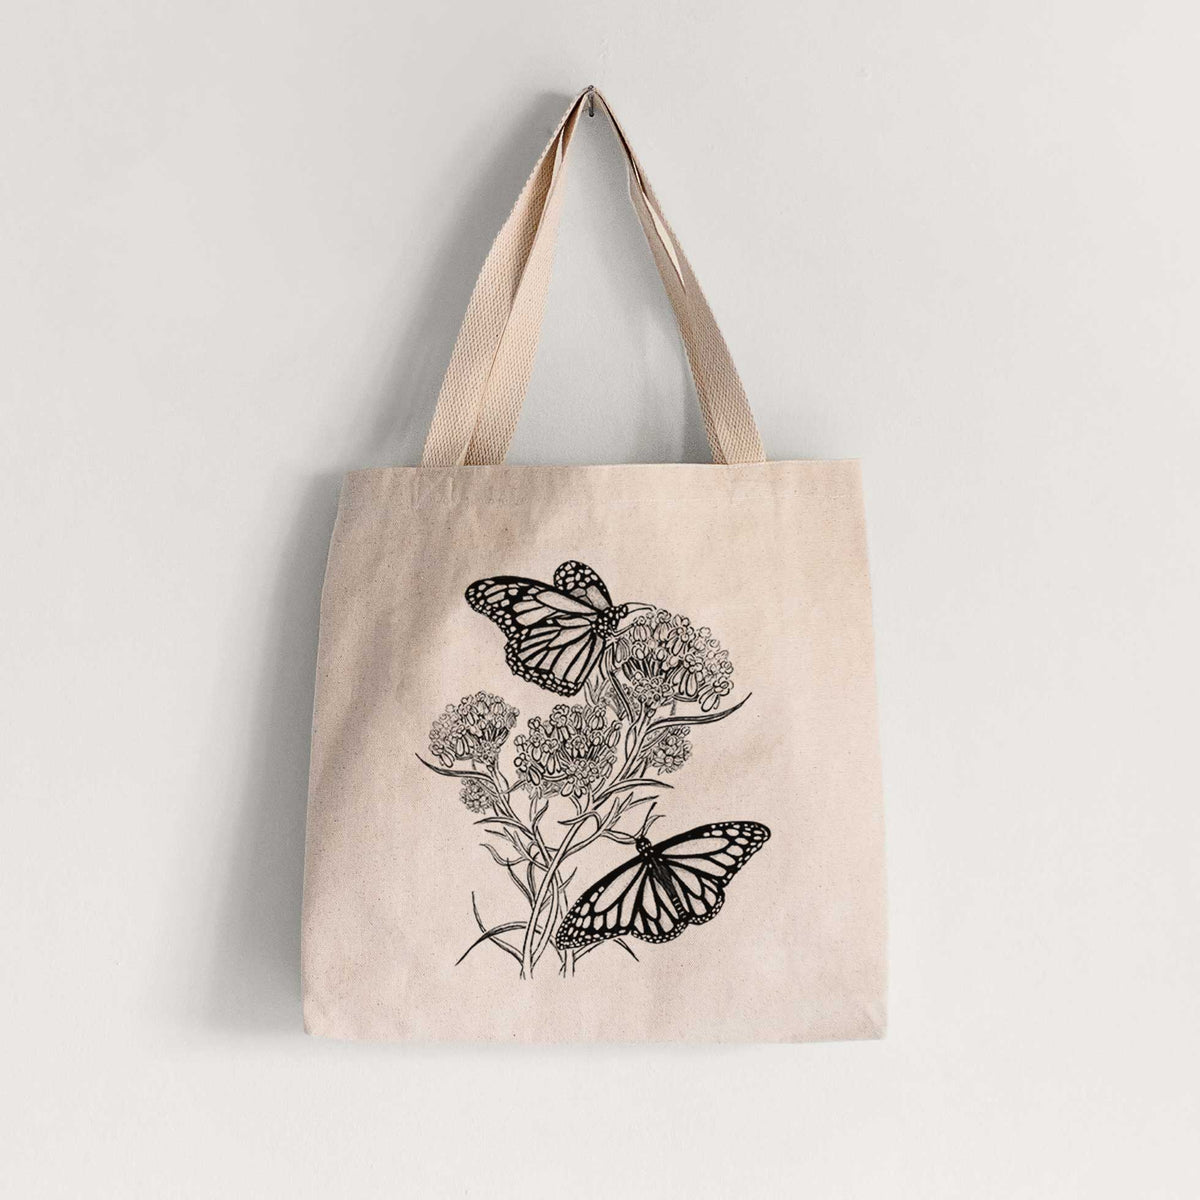 Narrowleaf Milkweed with Monarchs - Tote Bag